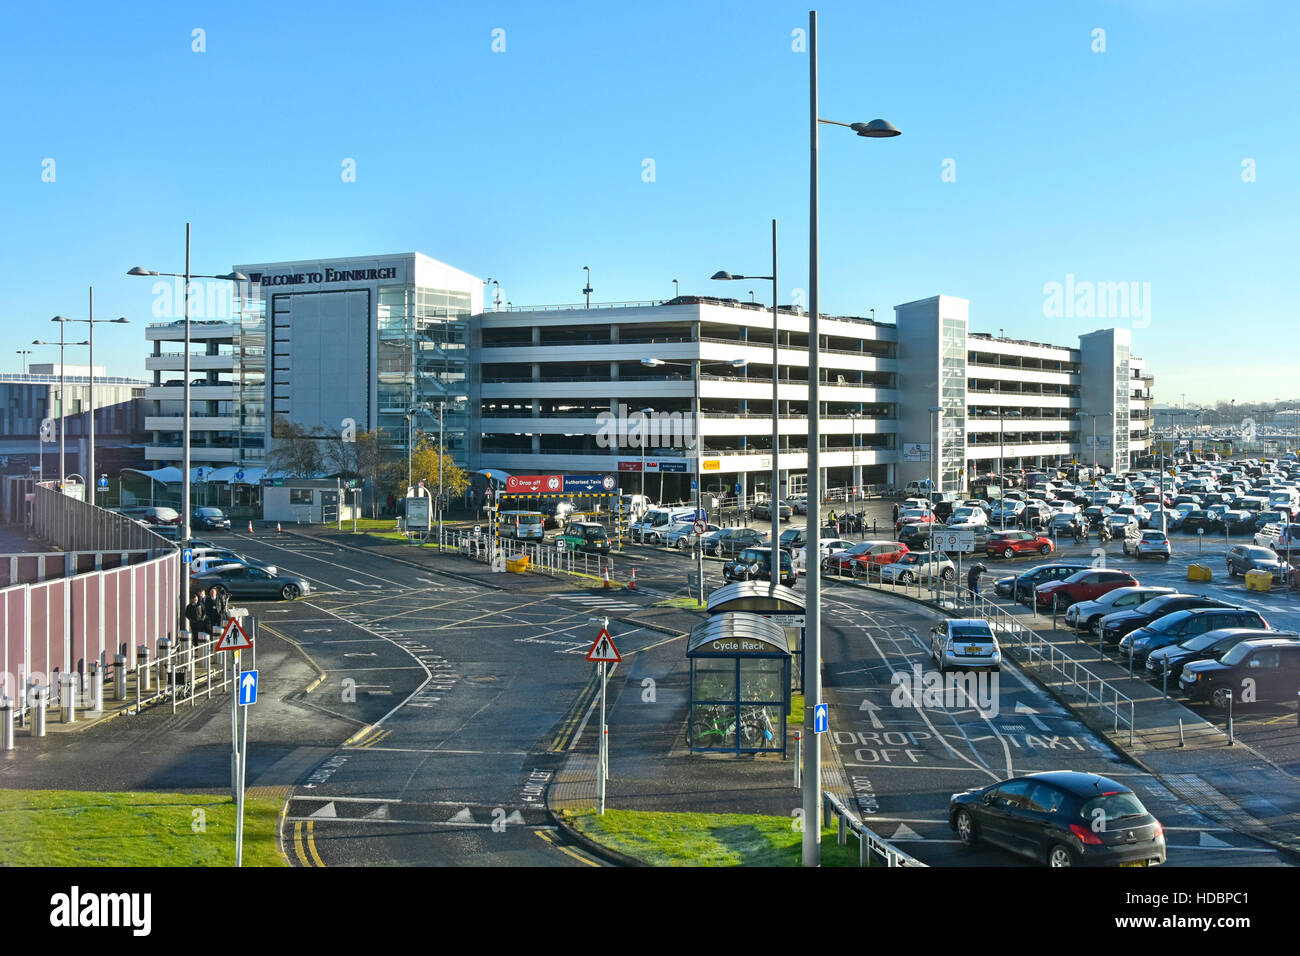 Strade di accesso al parcheggio multipiano e al parcheggio all'aperto presso le strutture aeronautiche scozzesi, Aeroporto di Edimburgo, Ingliston, Scozia, regno unito Foto Stock